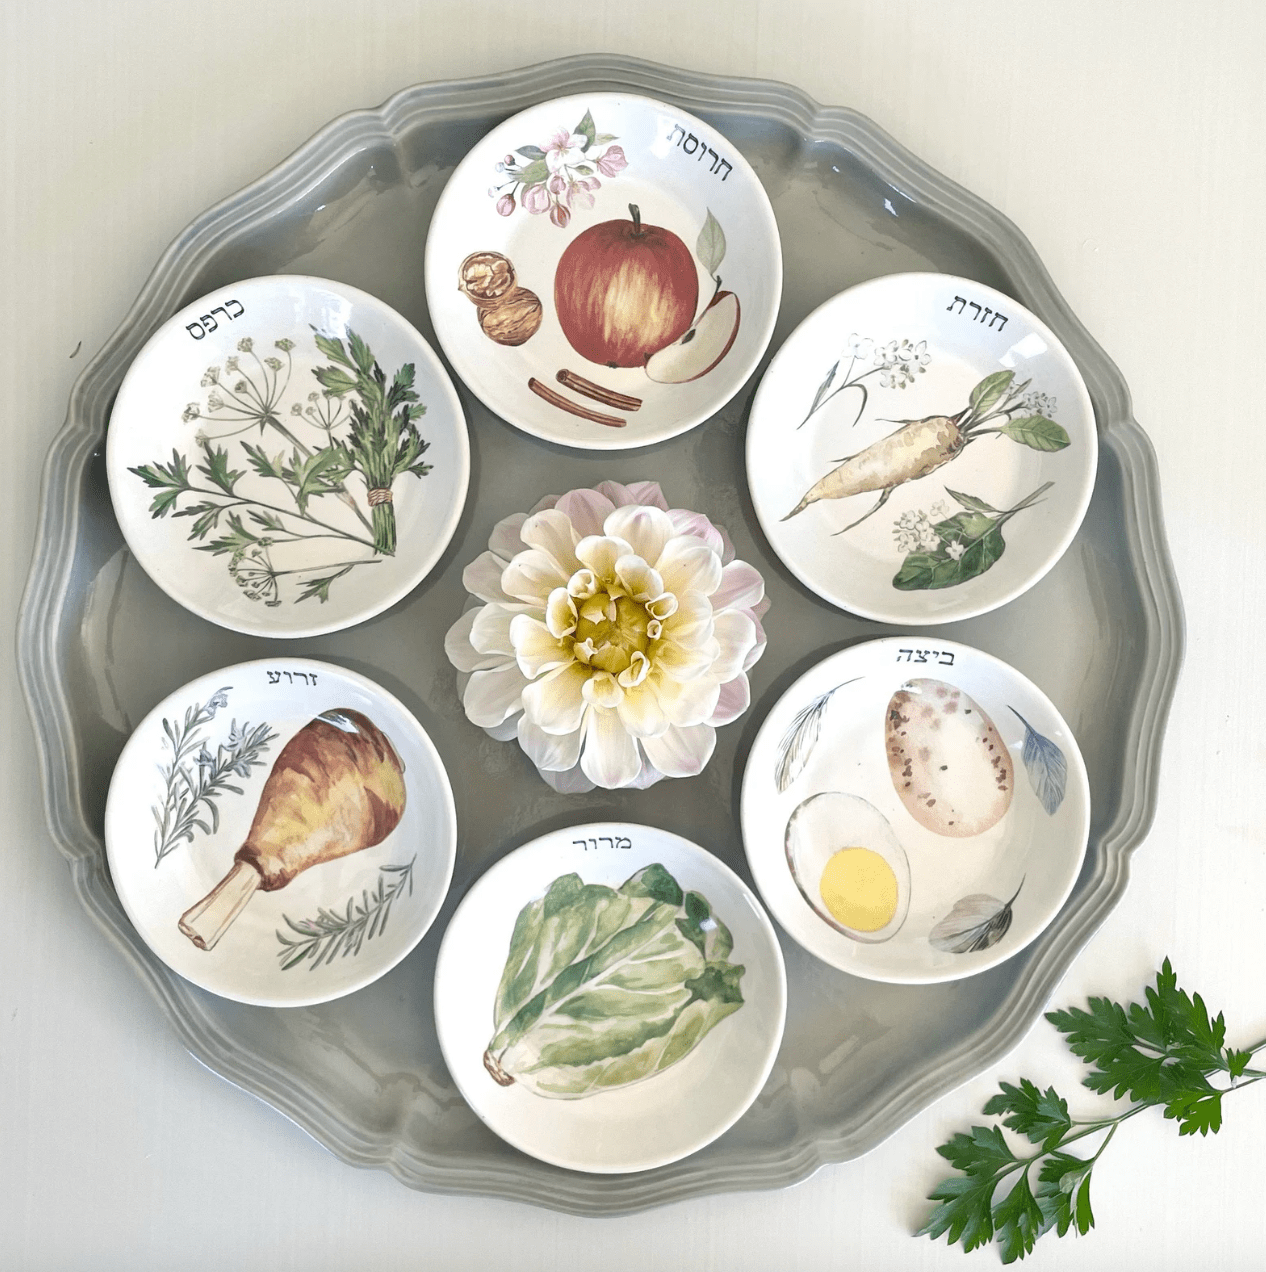 kate spade new york Seder Plates Handmade Ceramic Illustrated Seder Plate by Nina Keramik